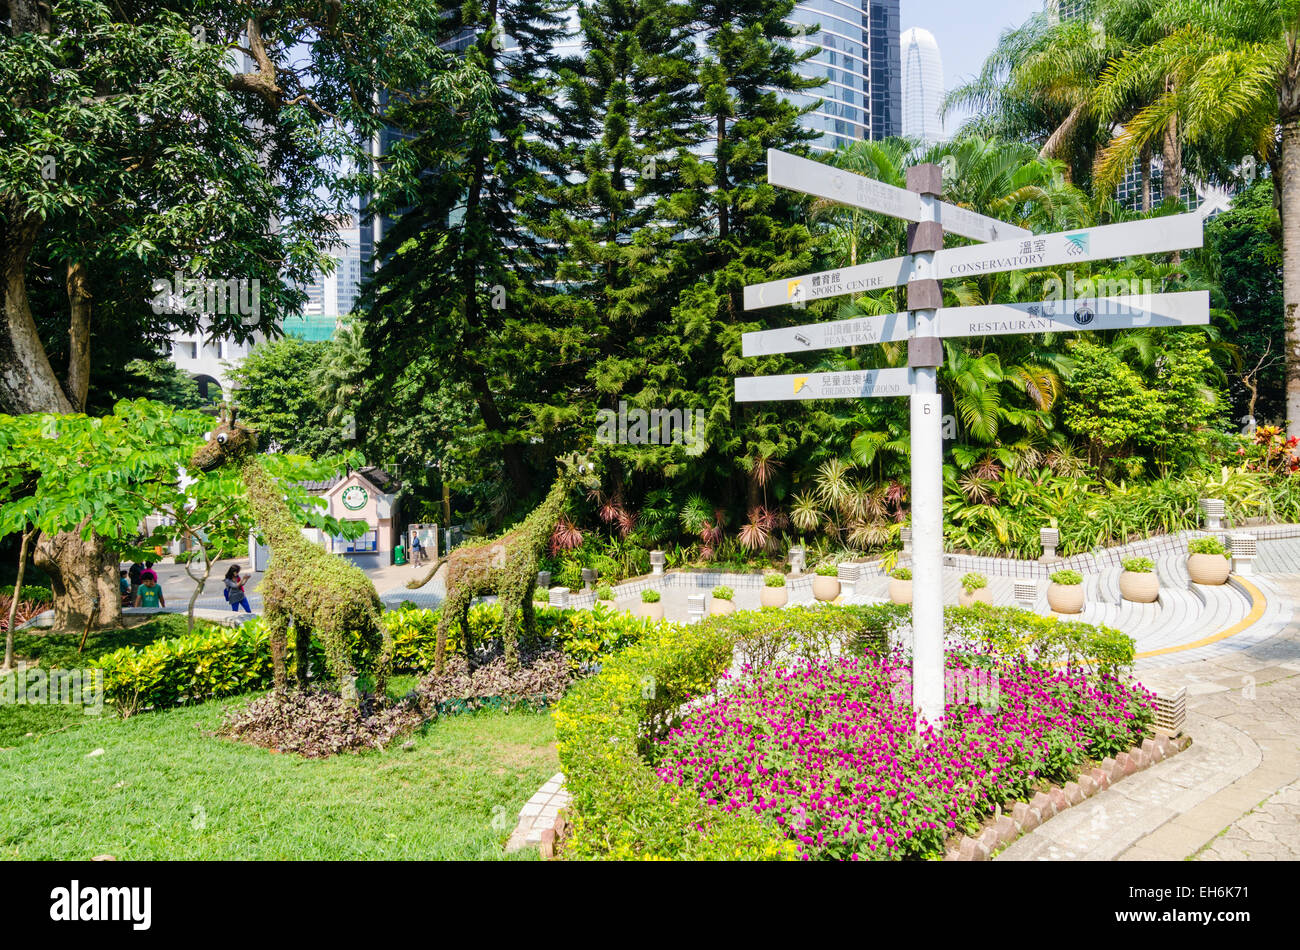 Signpost detail and animal topiary, Hong Kong Park, Hong Kong Stock Photo